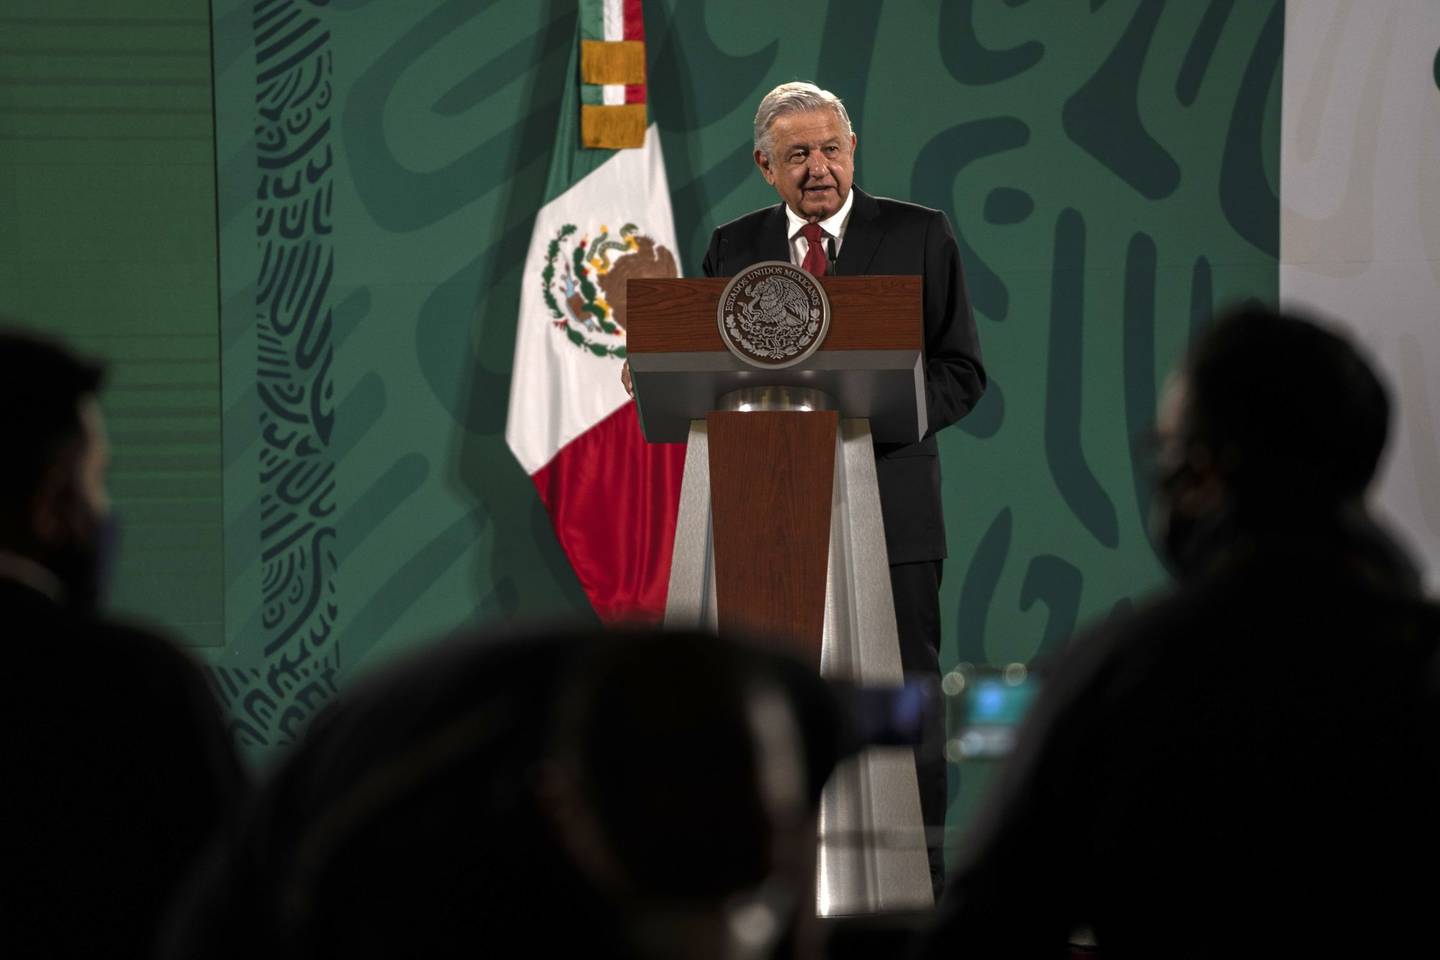 Luego de que funcionarios ya habían confirmado al suspensión de permisos a Trafigura, el presidente de México señaló los motivos detrás de la decisión.